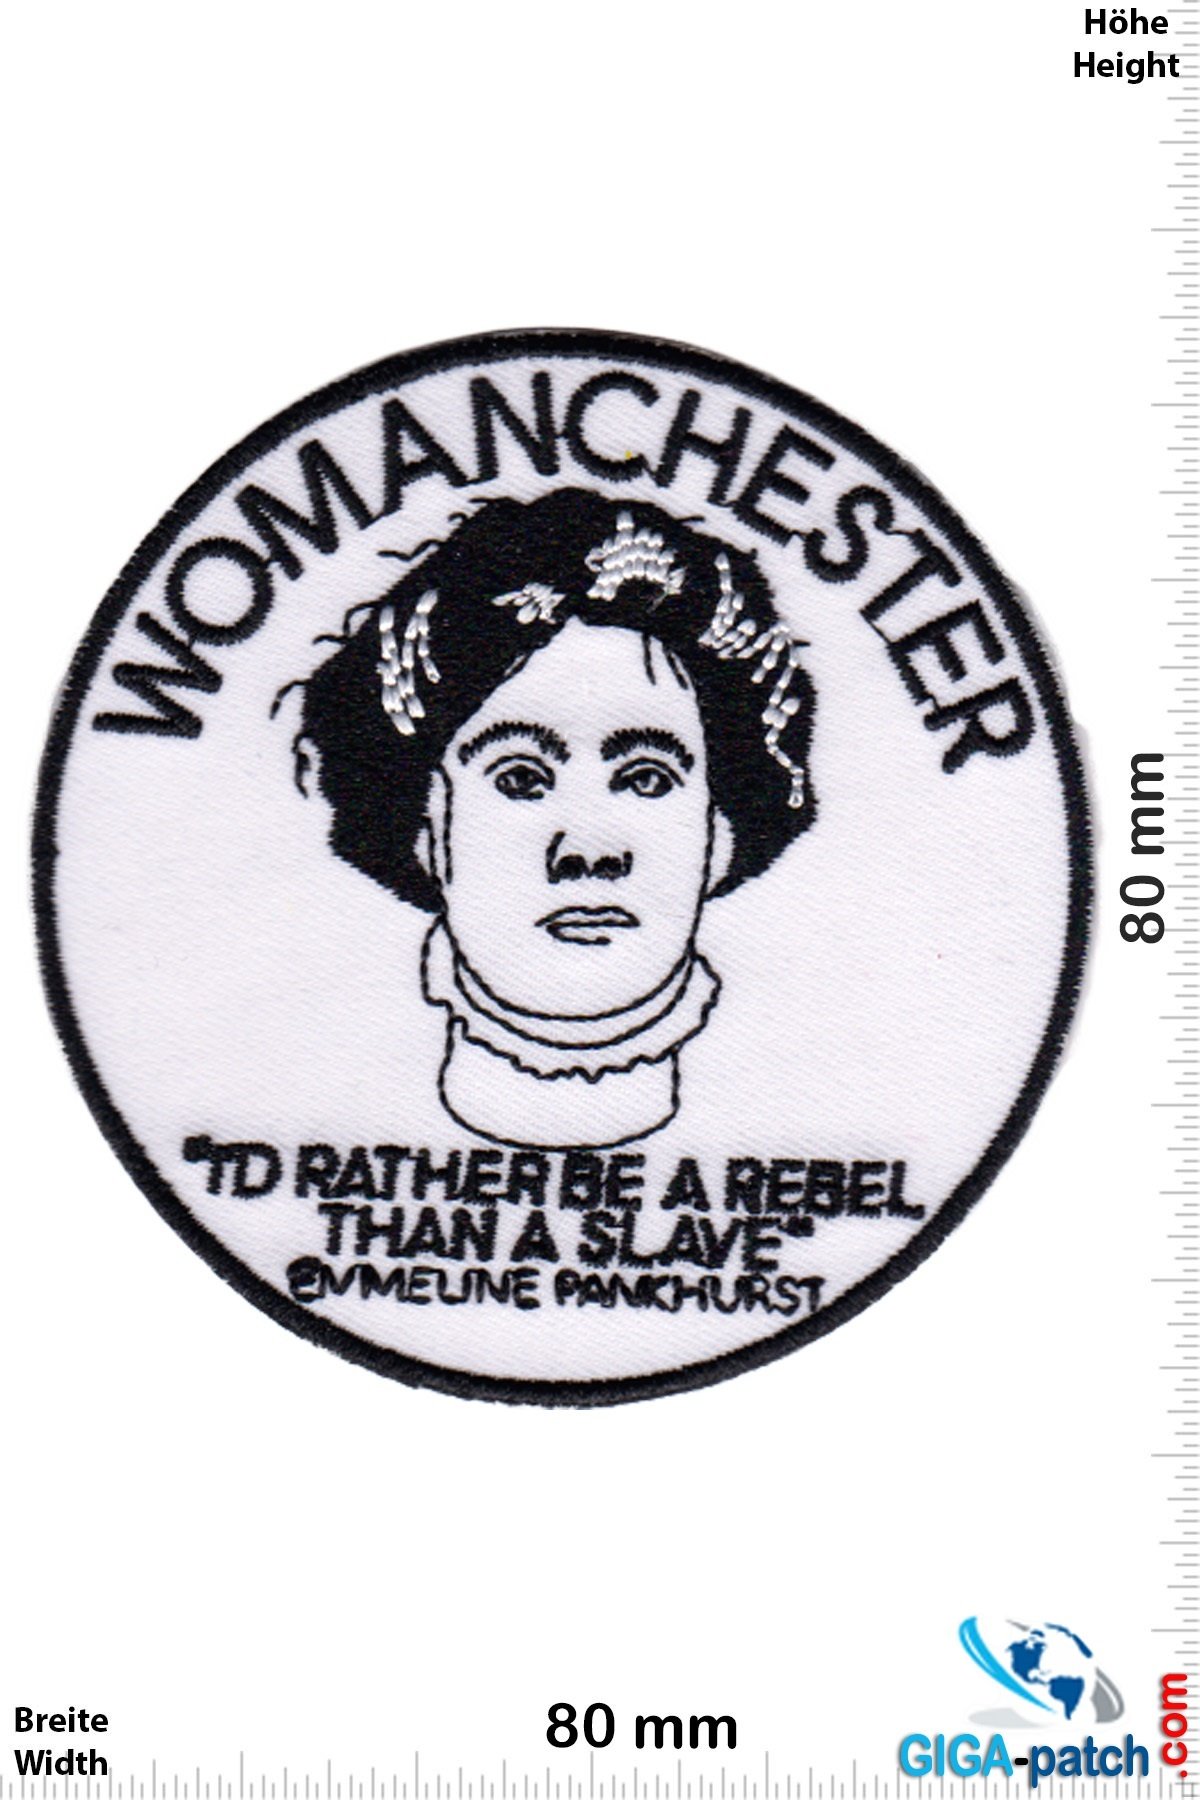 WOMANCHESTER - Emmeline Pankhurst